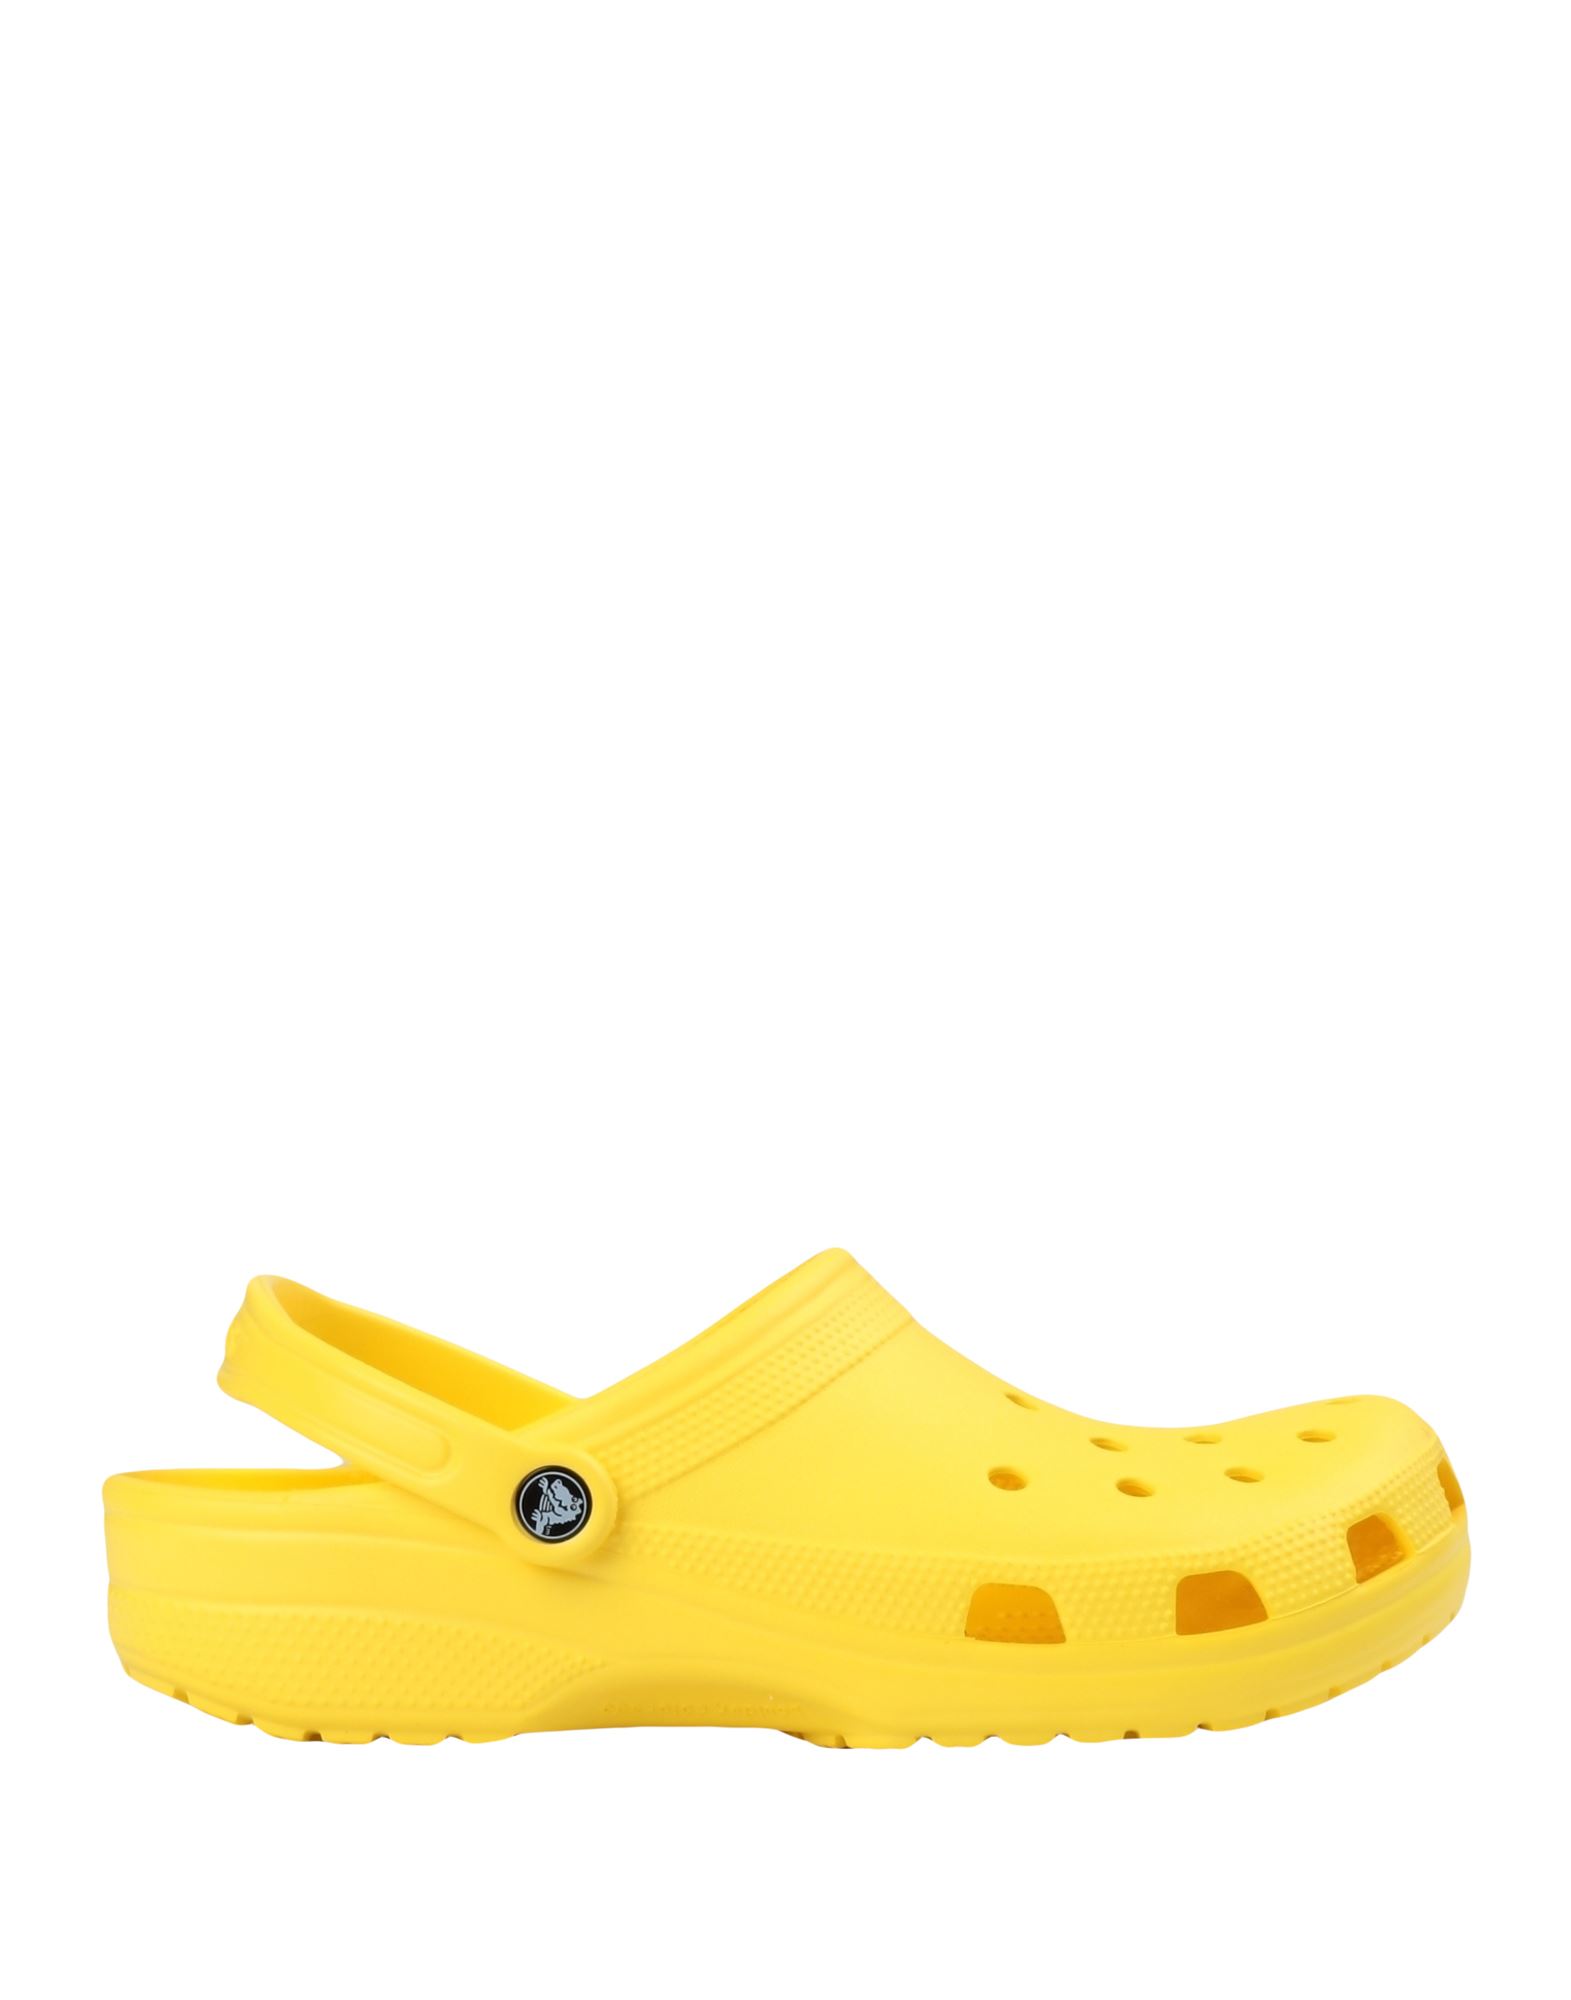 Crocs Sandals In Yellow